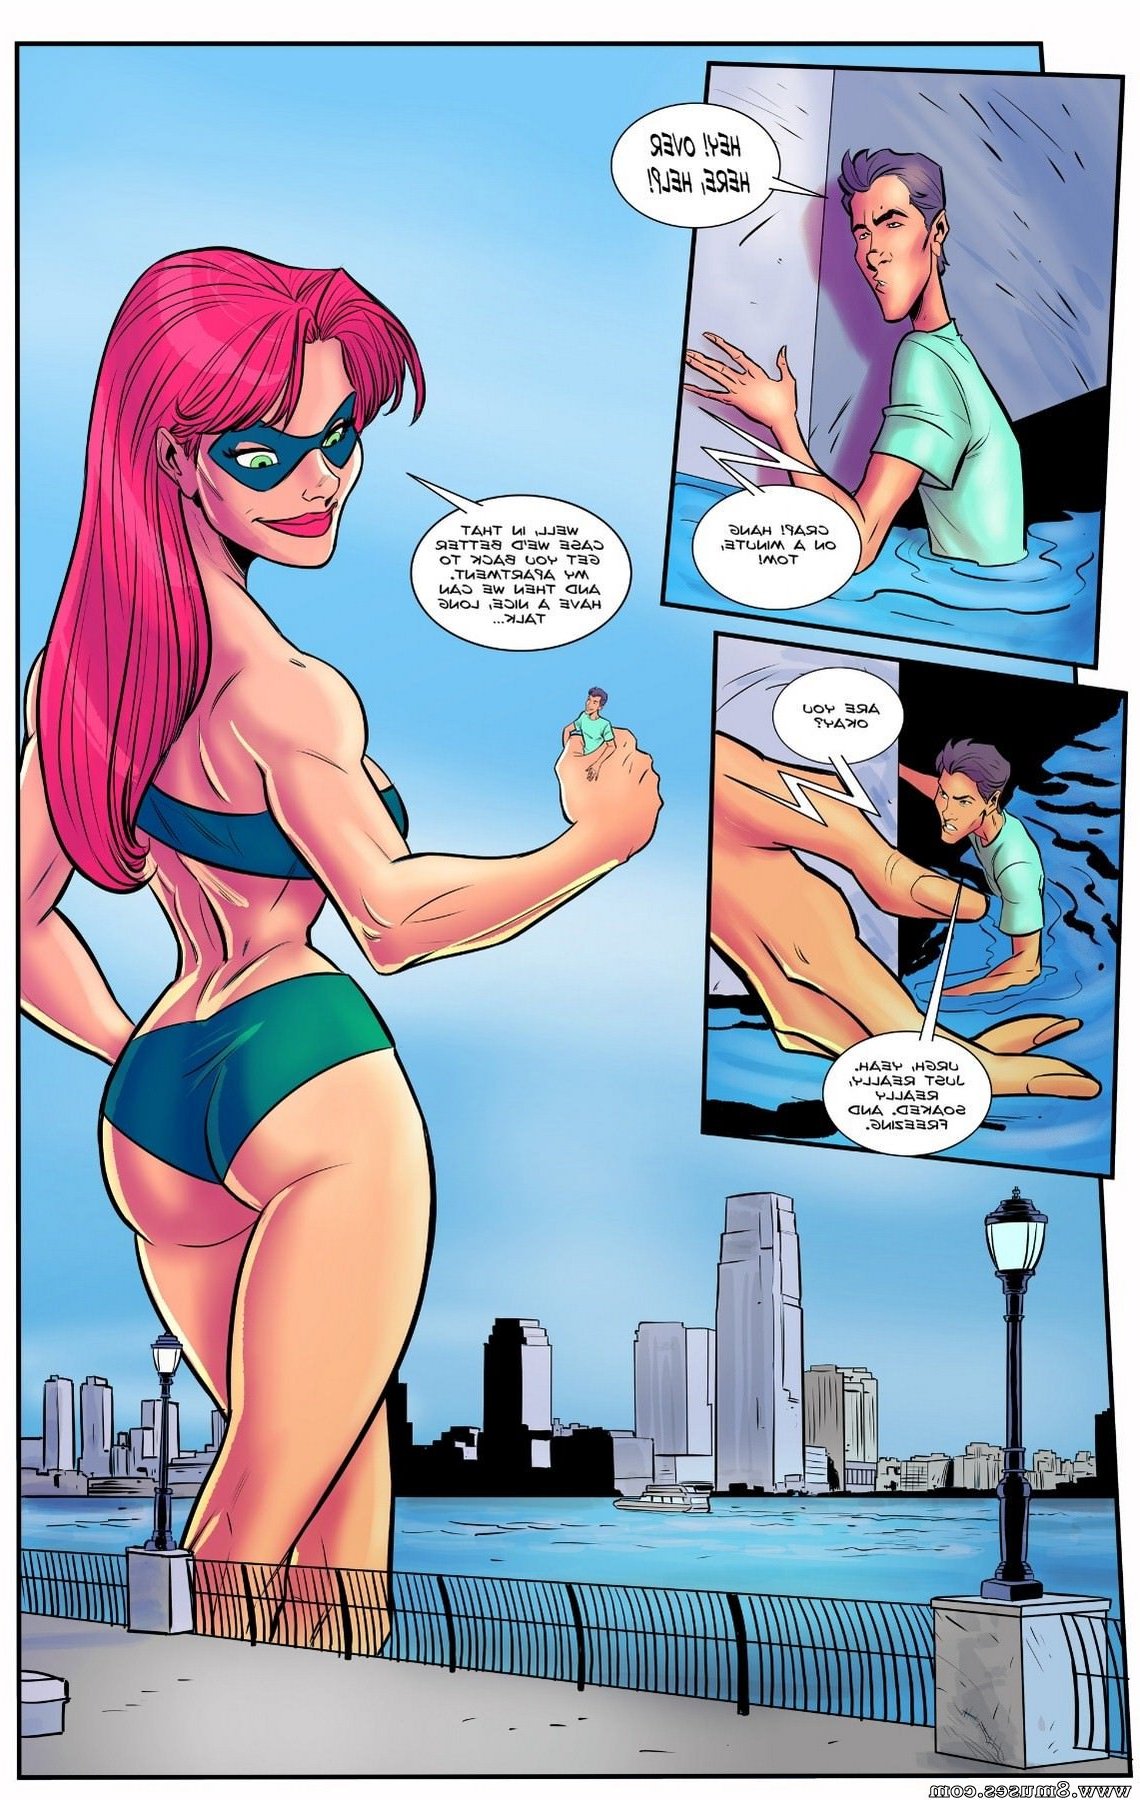 Giantess-Club-Comics/The-Superheroines-Daughter/Issue-2 The_Superheroines_Daughter_-_Issue_2_12.jpg